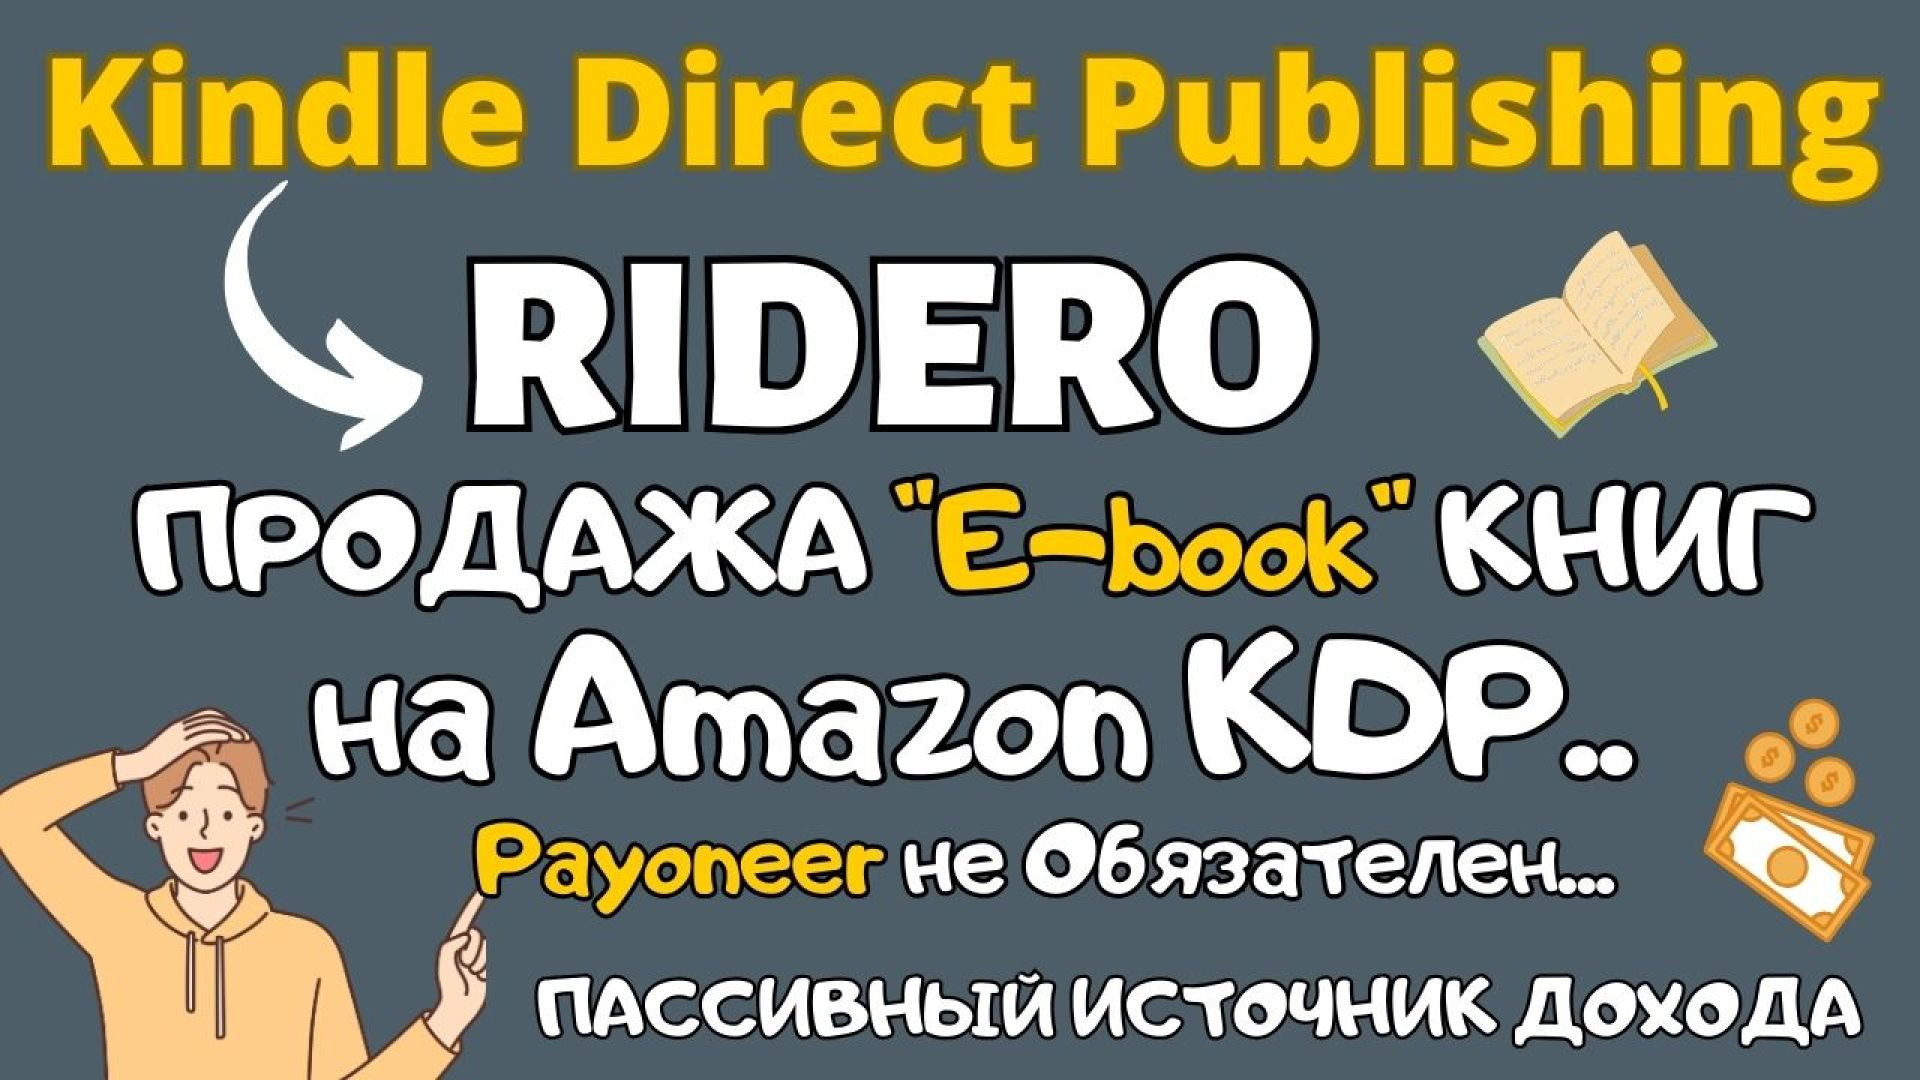 ⁣Kindle Direct Publishing и Ridero - Продажа Электронных Книг / Как  Издать Ebook и Разместить в KDP💰